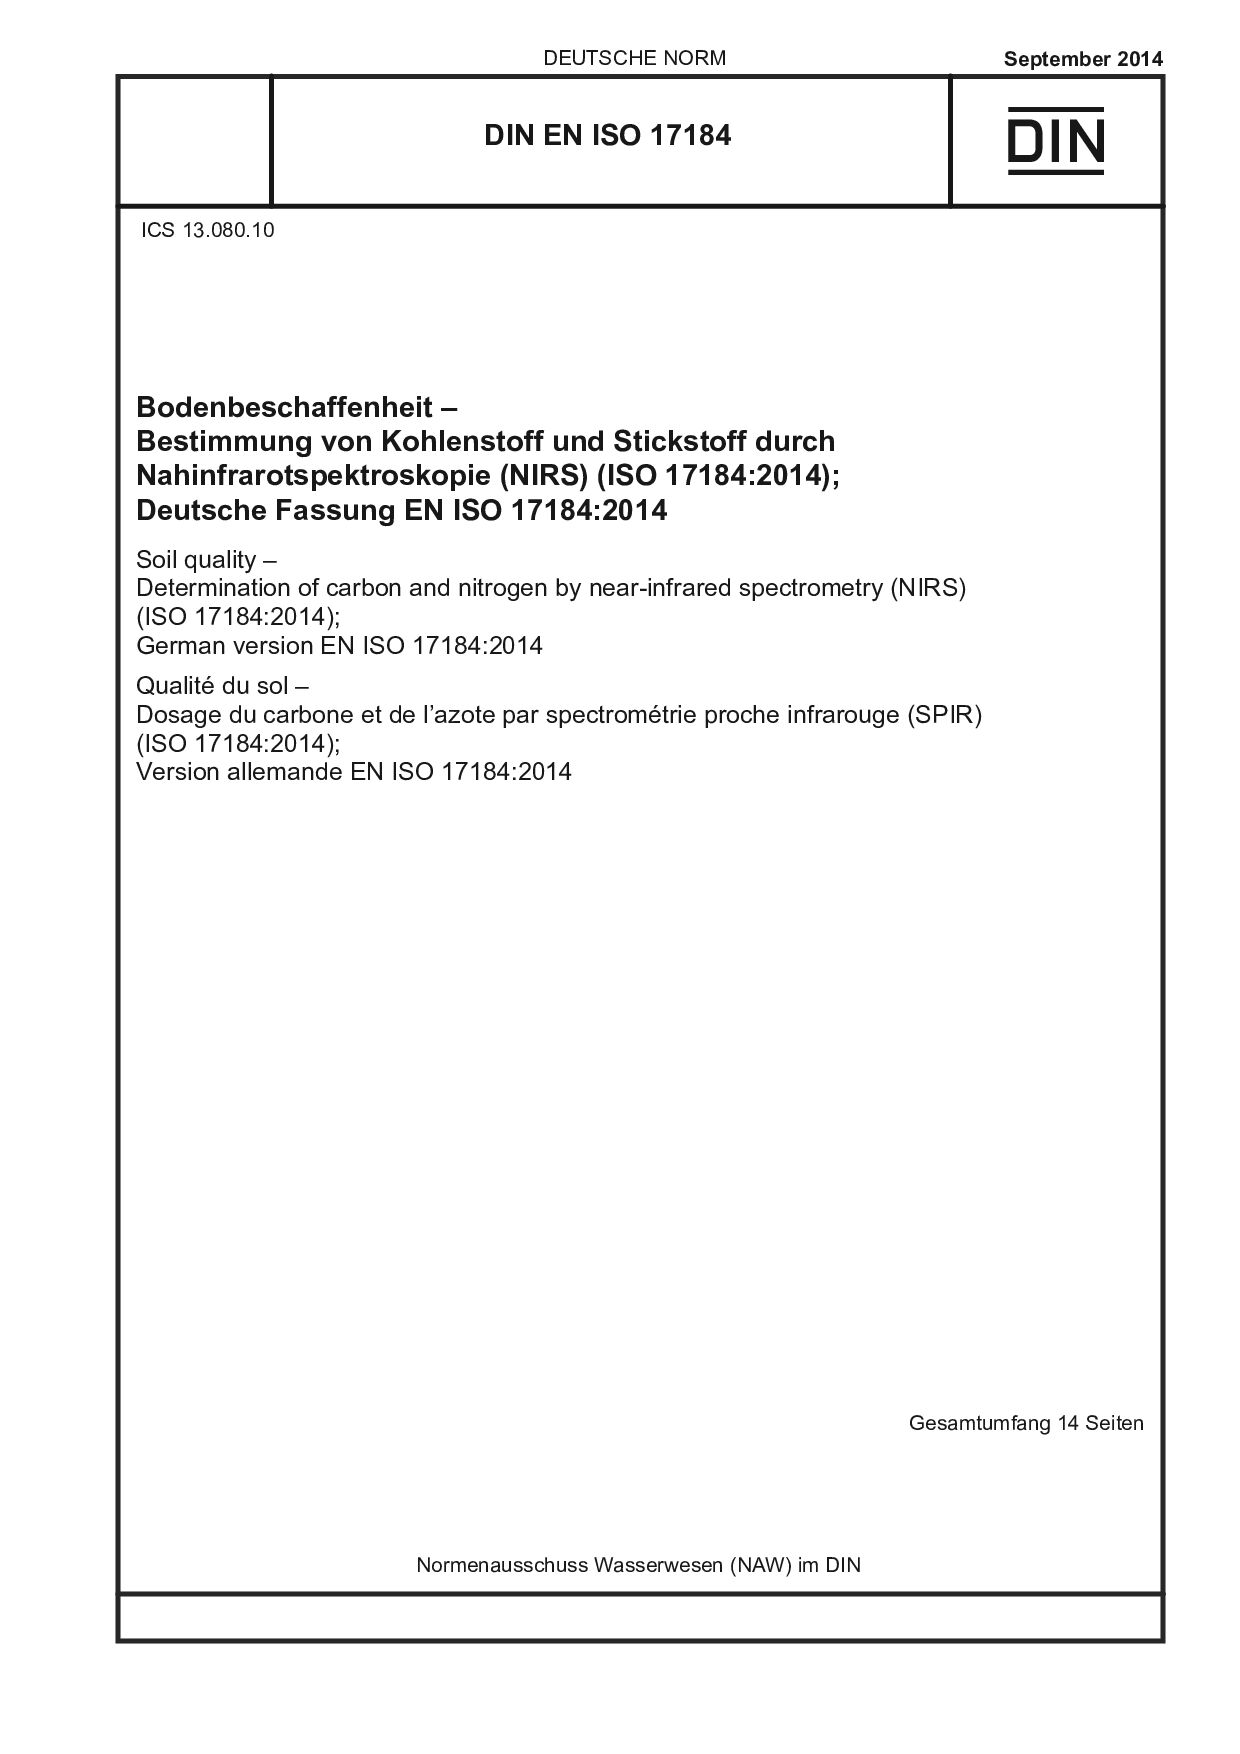 DIN EN ISO 17184:2014-09